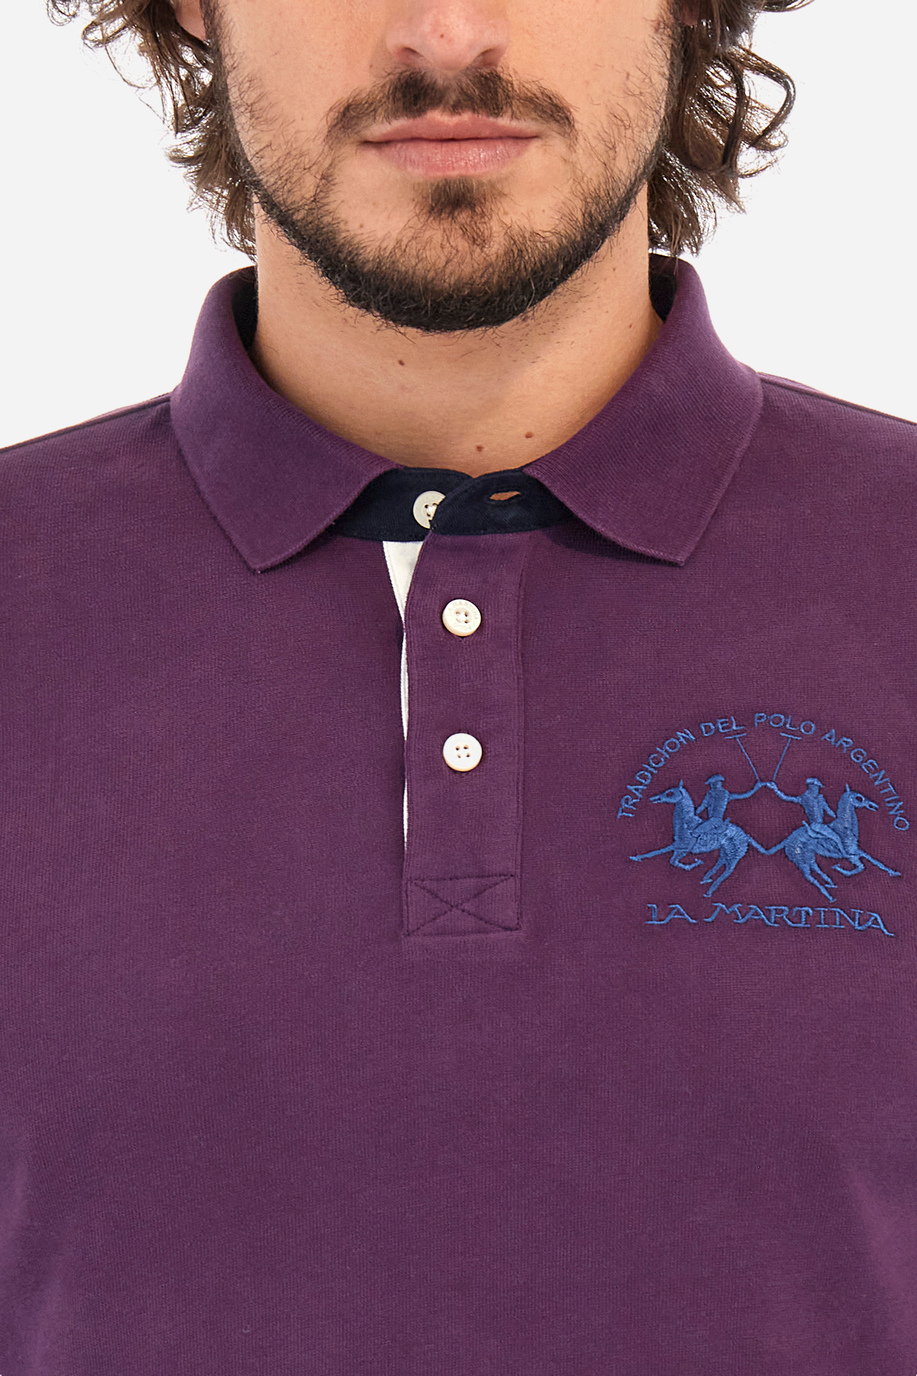 Herren -Poloshirt regular fit - Wilfredo - Aussergewöhnliche Geschenke für ihn | La Martina - Official Online Shop